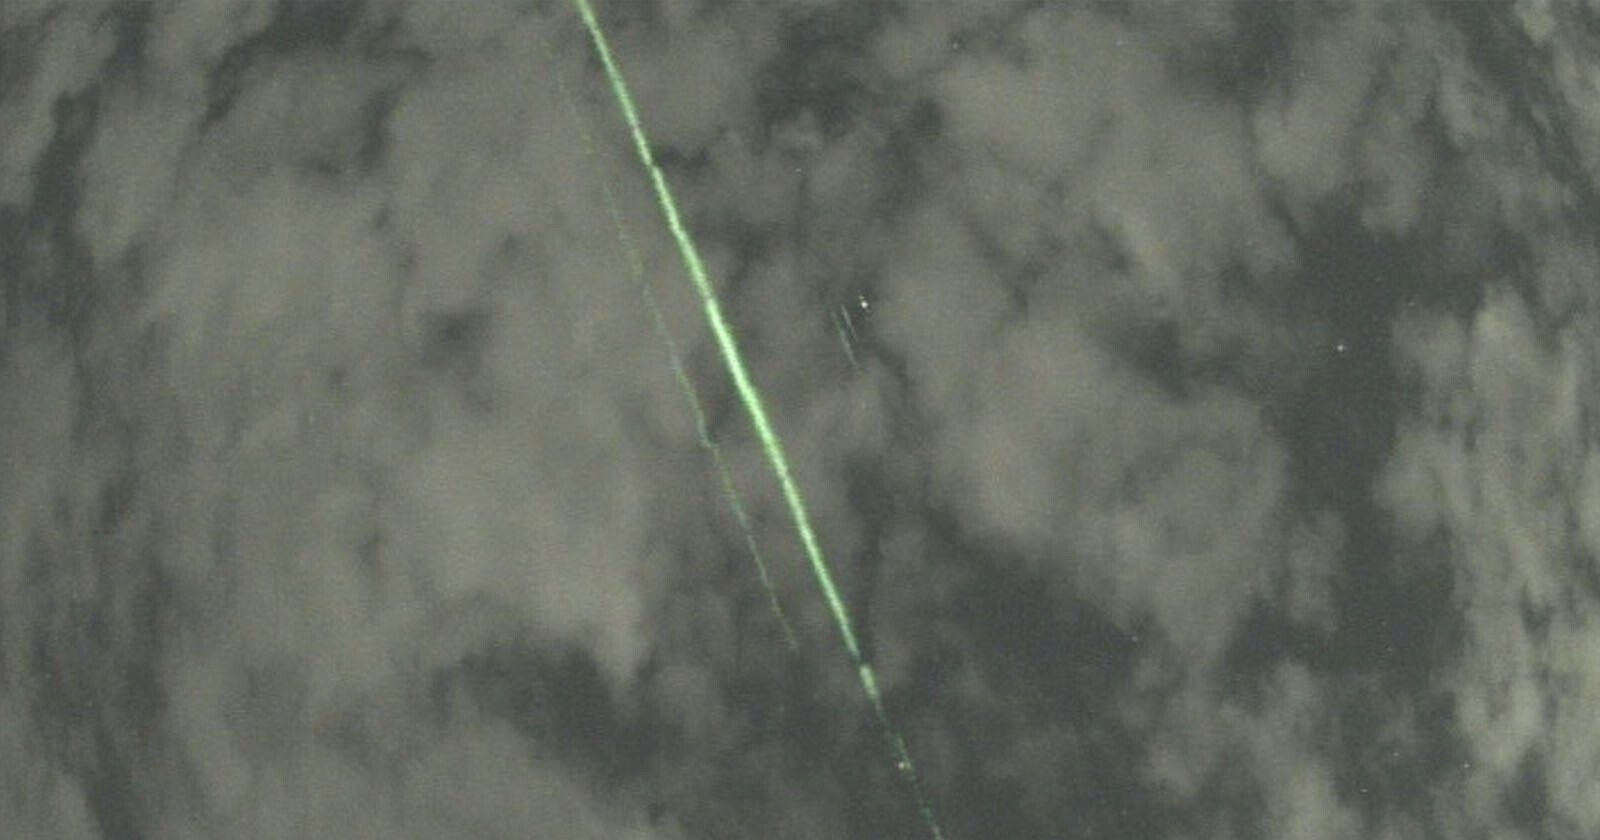 Astronomer Captures NASAs Mysterious Green Laser Beams